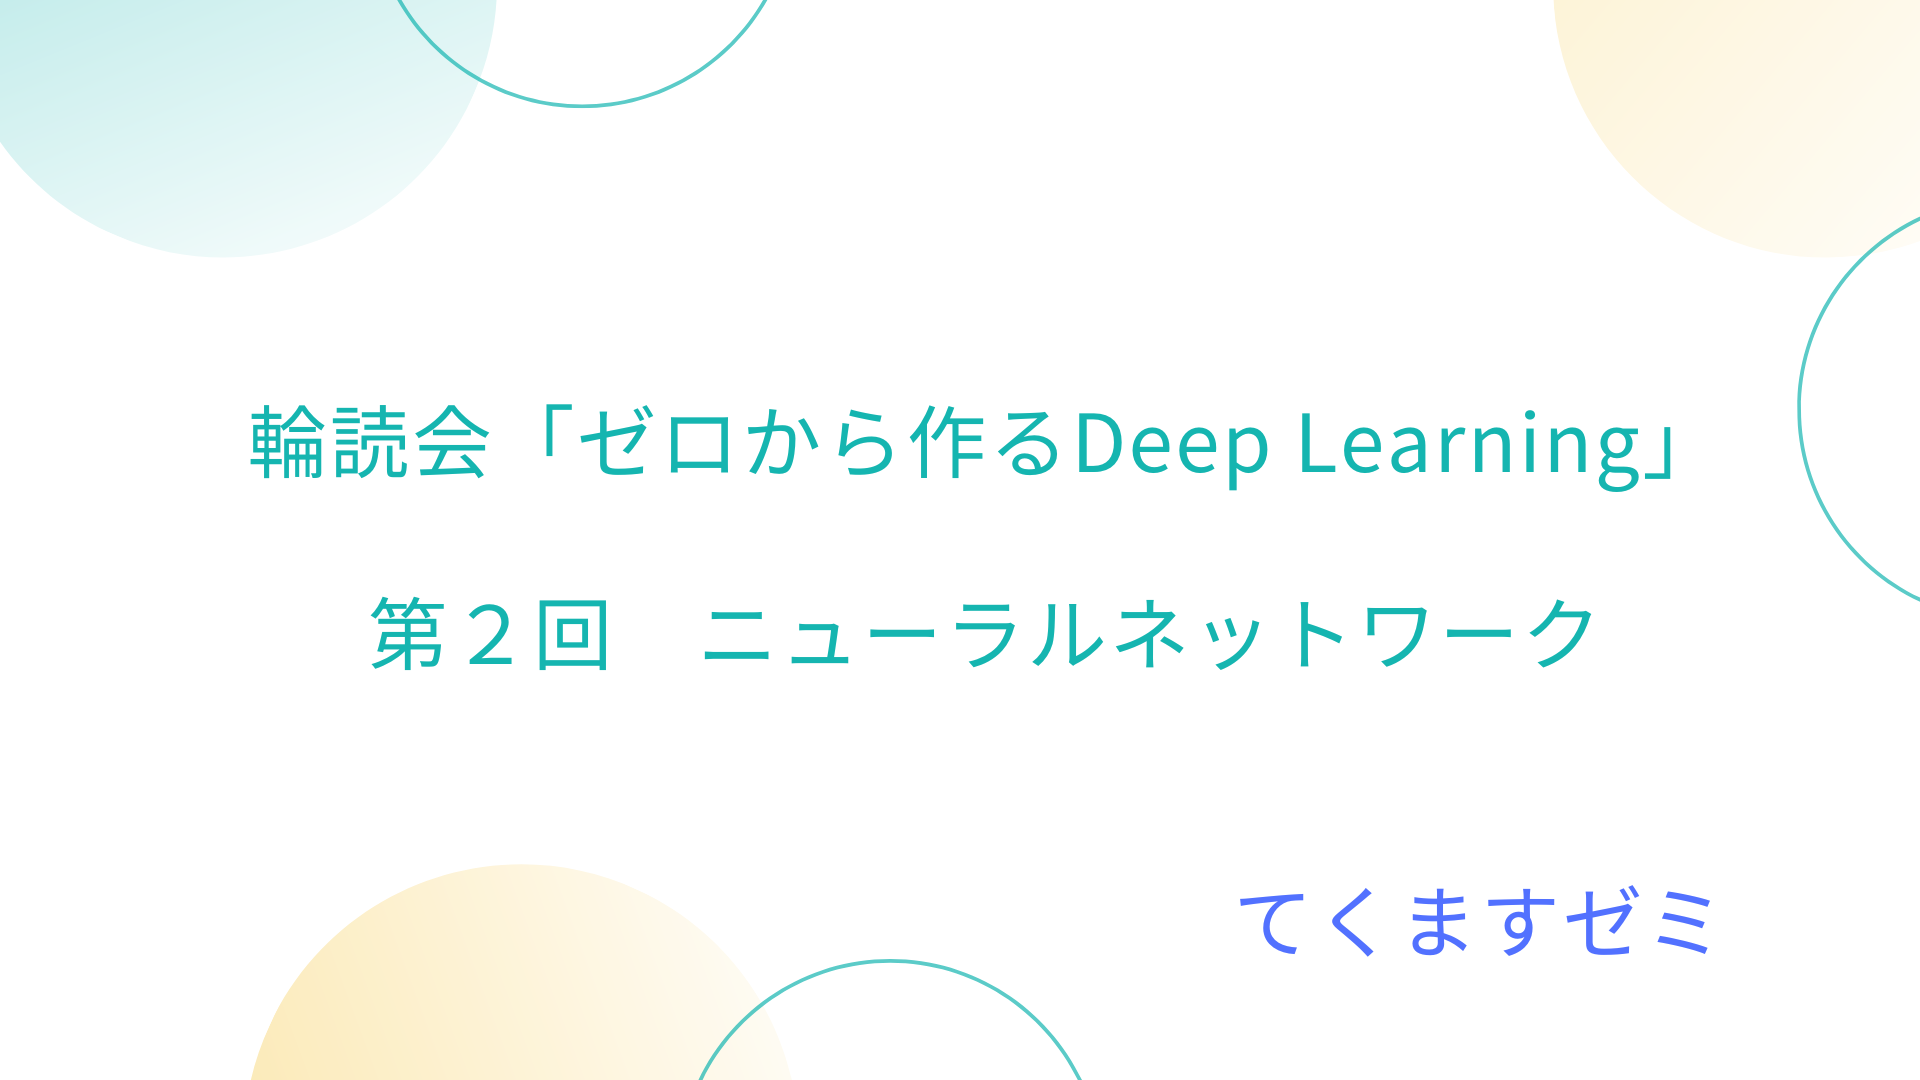 輪読会「ゼロから作るDeep Learning」第２回 TechMath Project